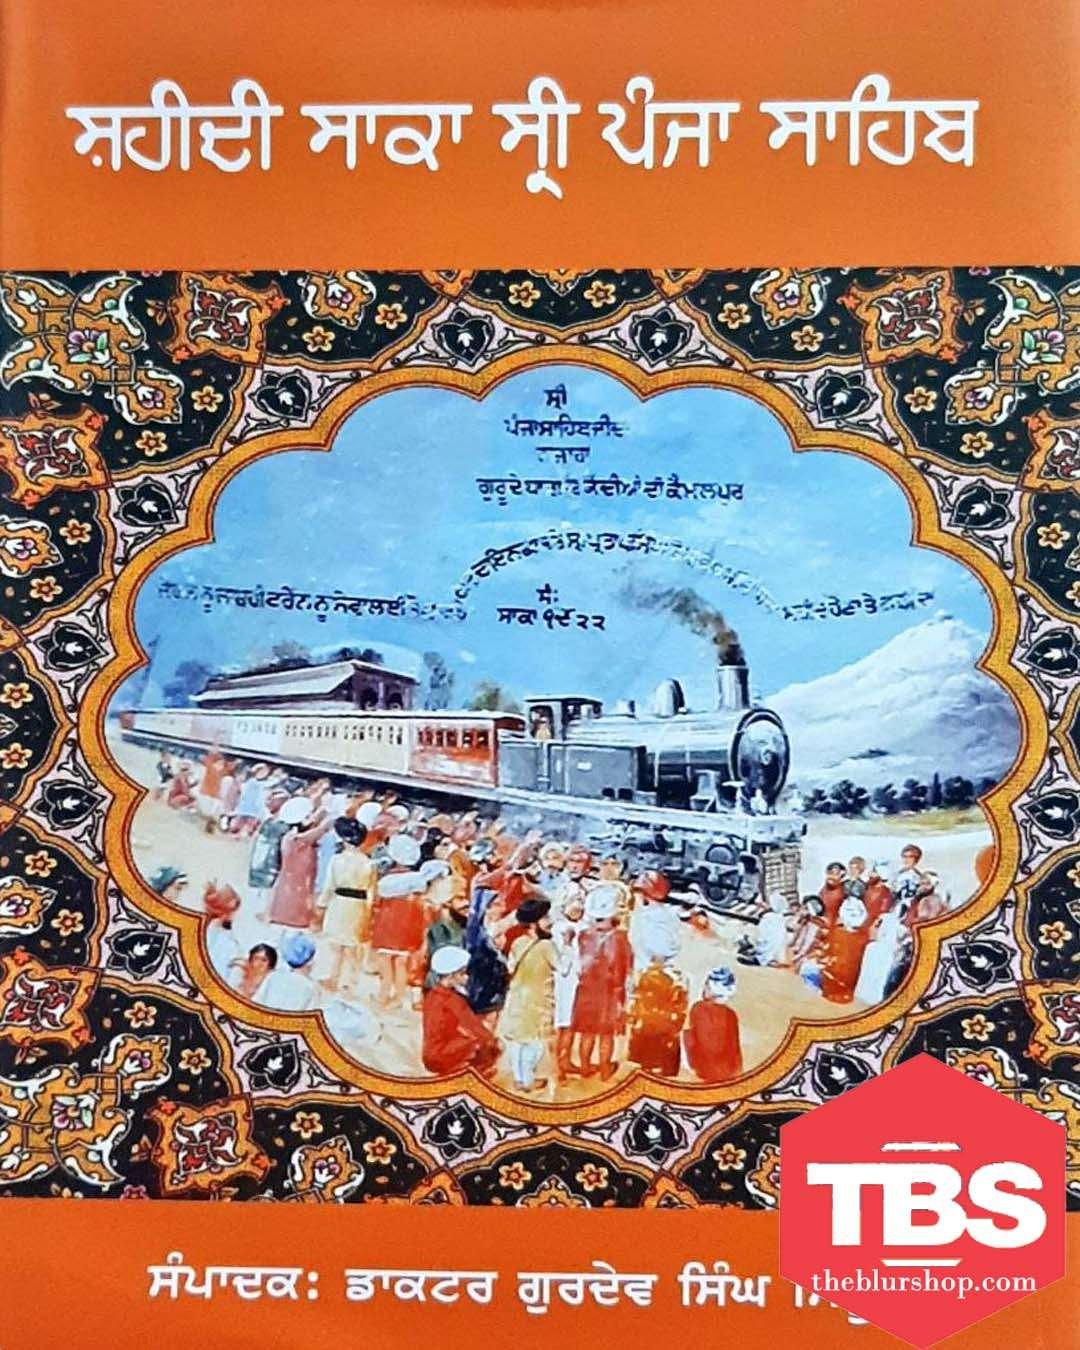 Shahidi Saka Shri Panja Sahib